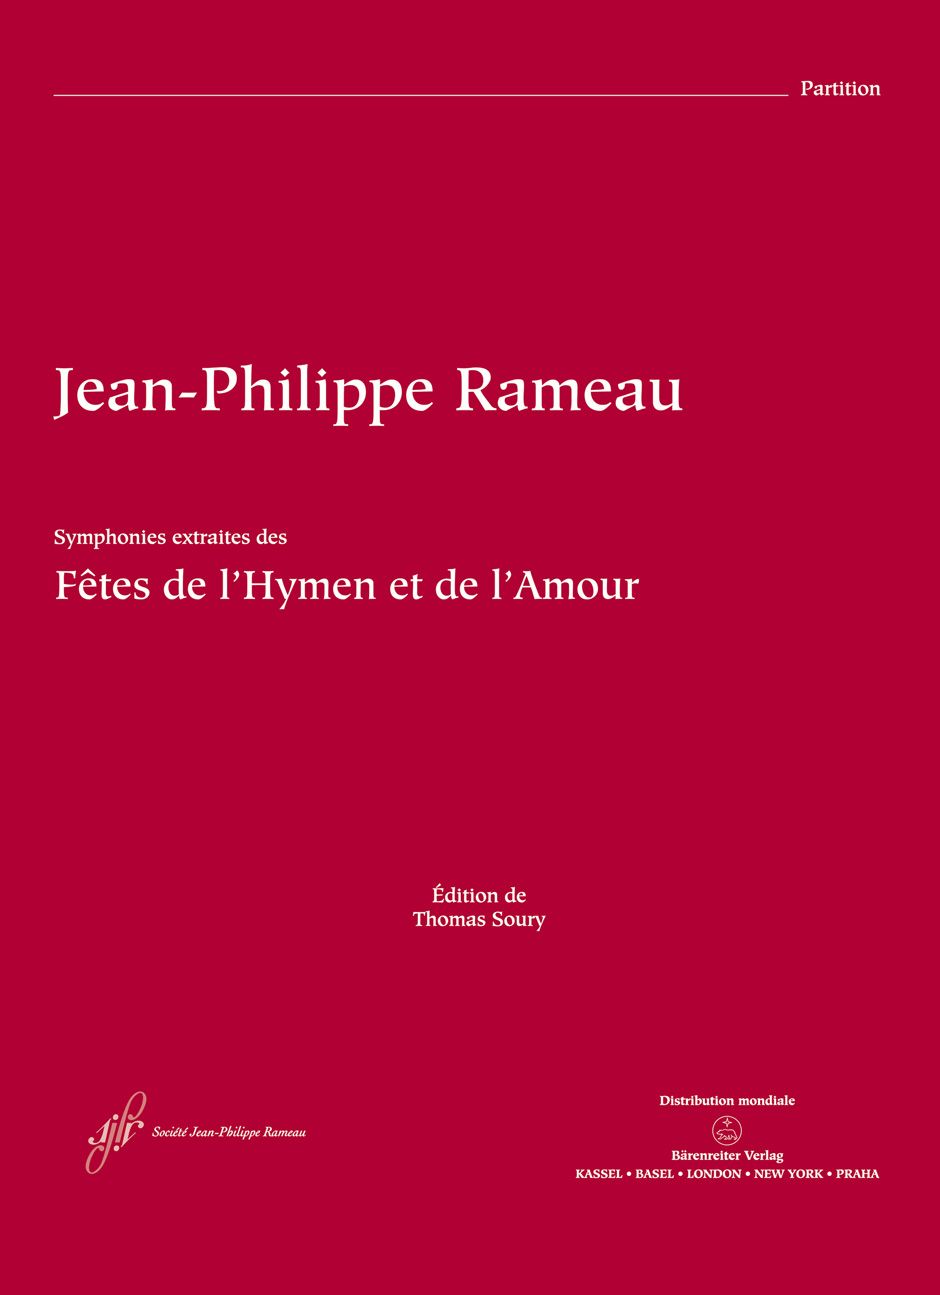 Les FÛtes de l'Hymen et de l'A • Rameau, Jean-Philippe